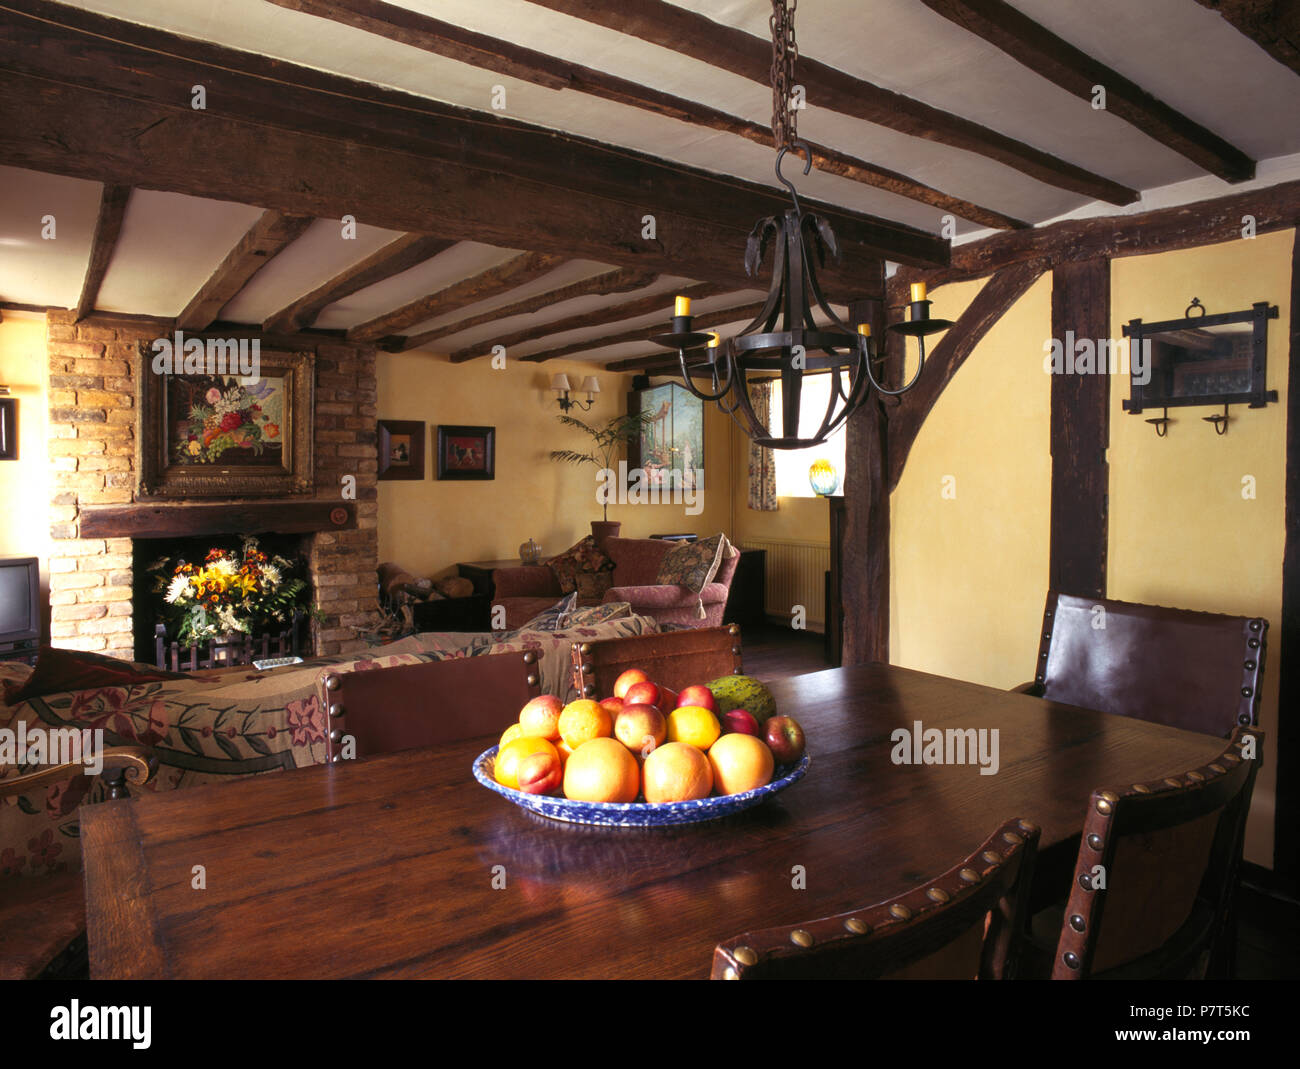 Ciotola di frutta sul tavolo in rovere cottage in sala da pranzo e soggiorno roomn Foto Stock